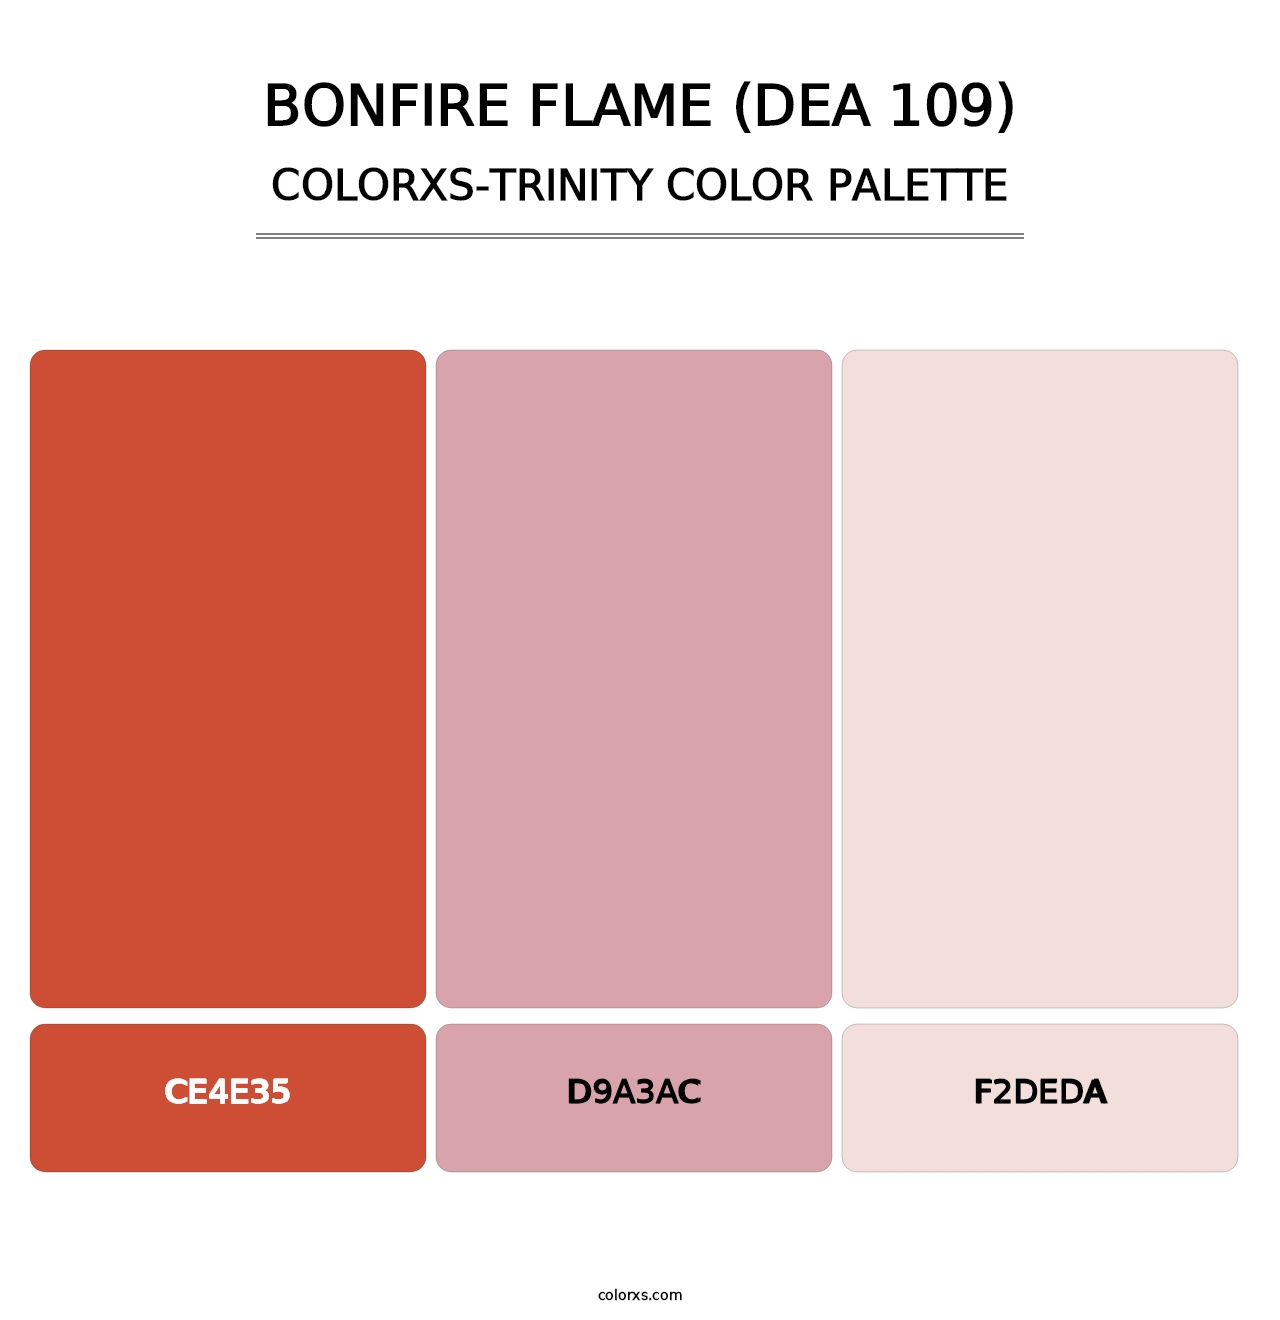 Bonfire Flame (DEA 109) - Colorxs Trinity Palette